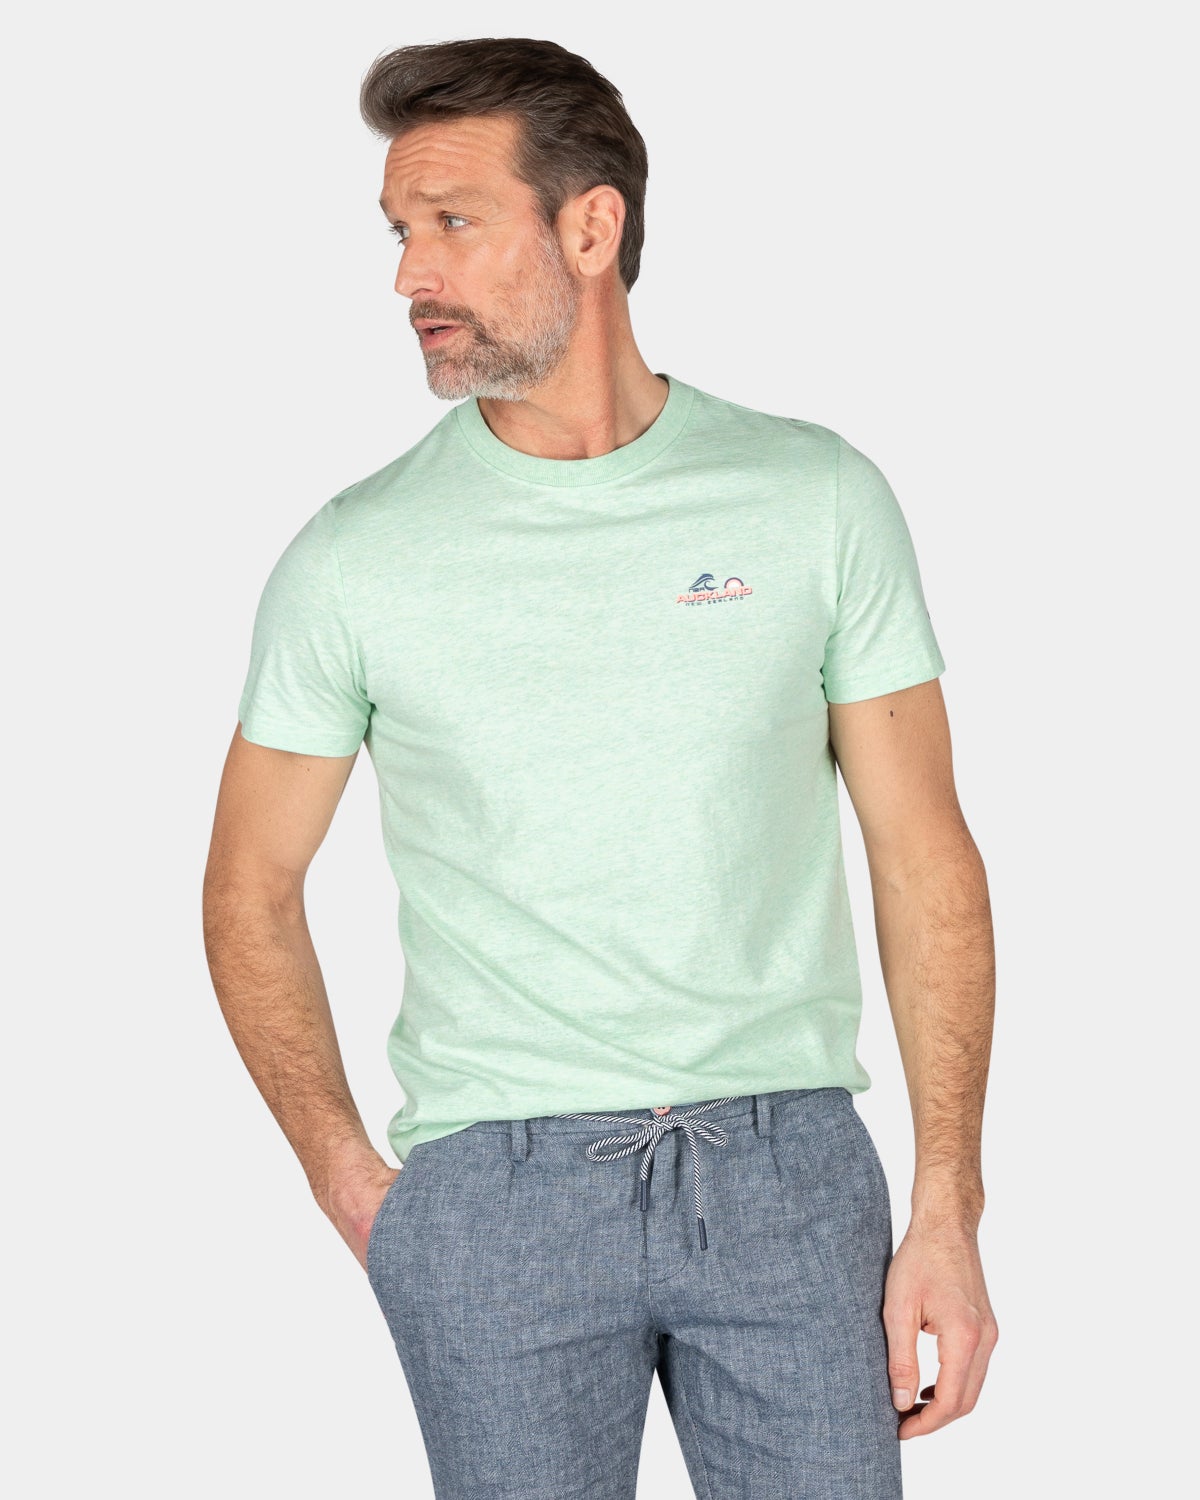 Plain cotton t-shirt - Teal Green